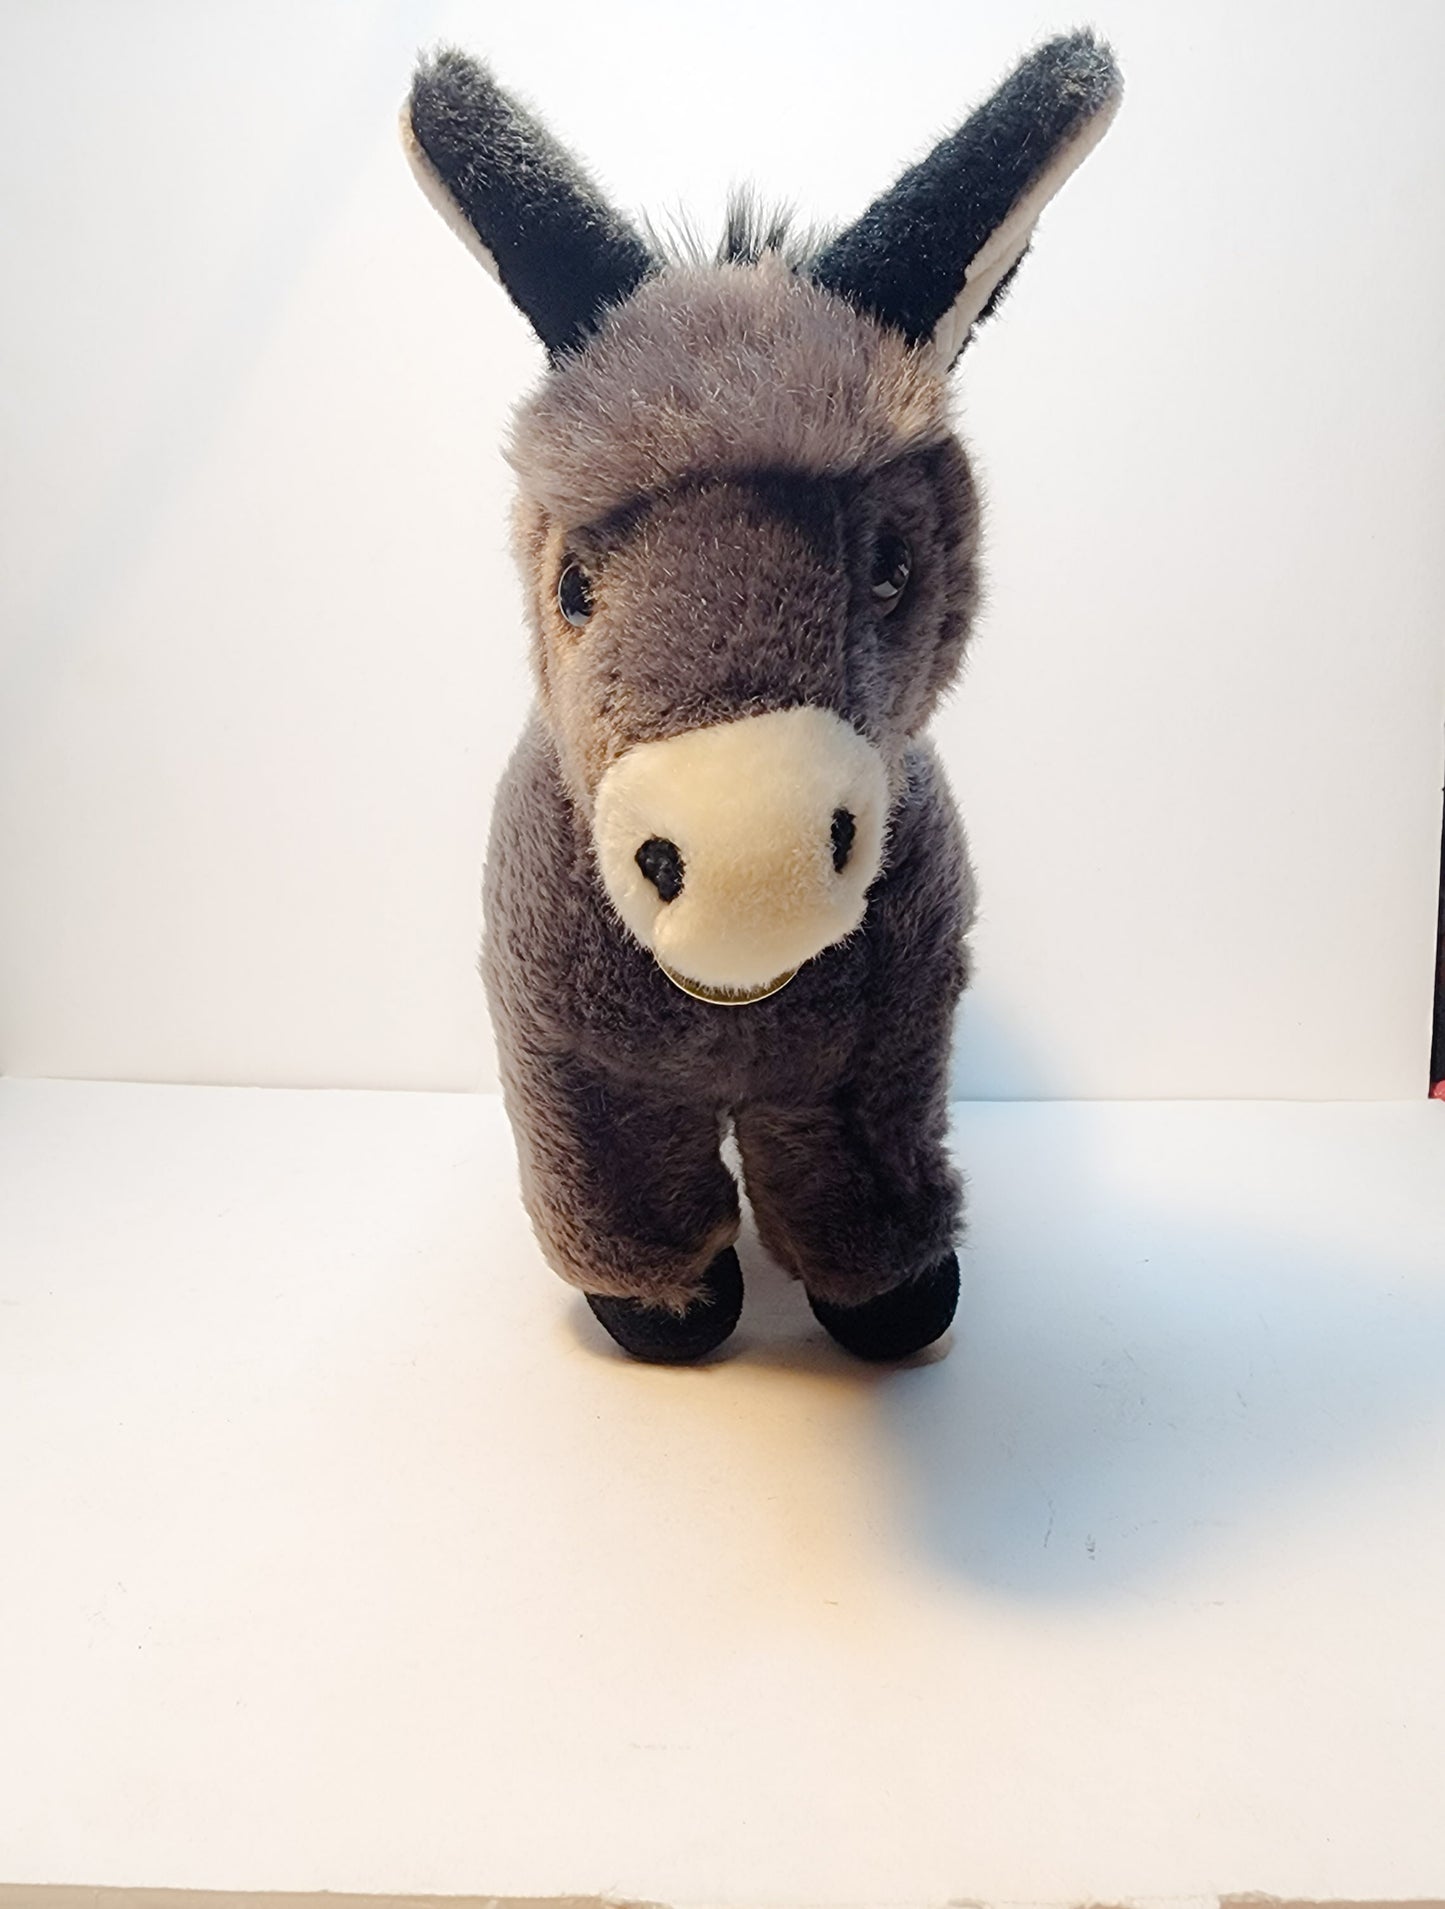 Aurora Miyoni Tots Donkey foal baby Mule  Plush stuffed animal